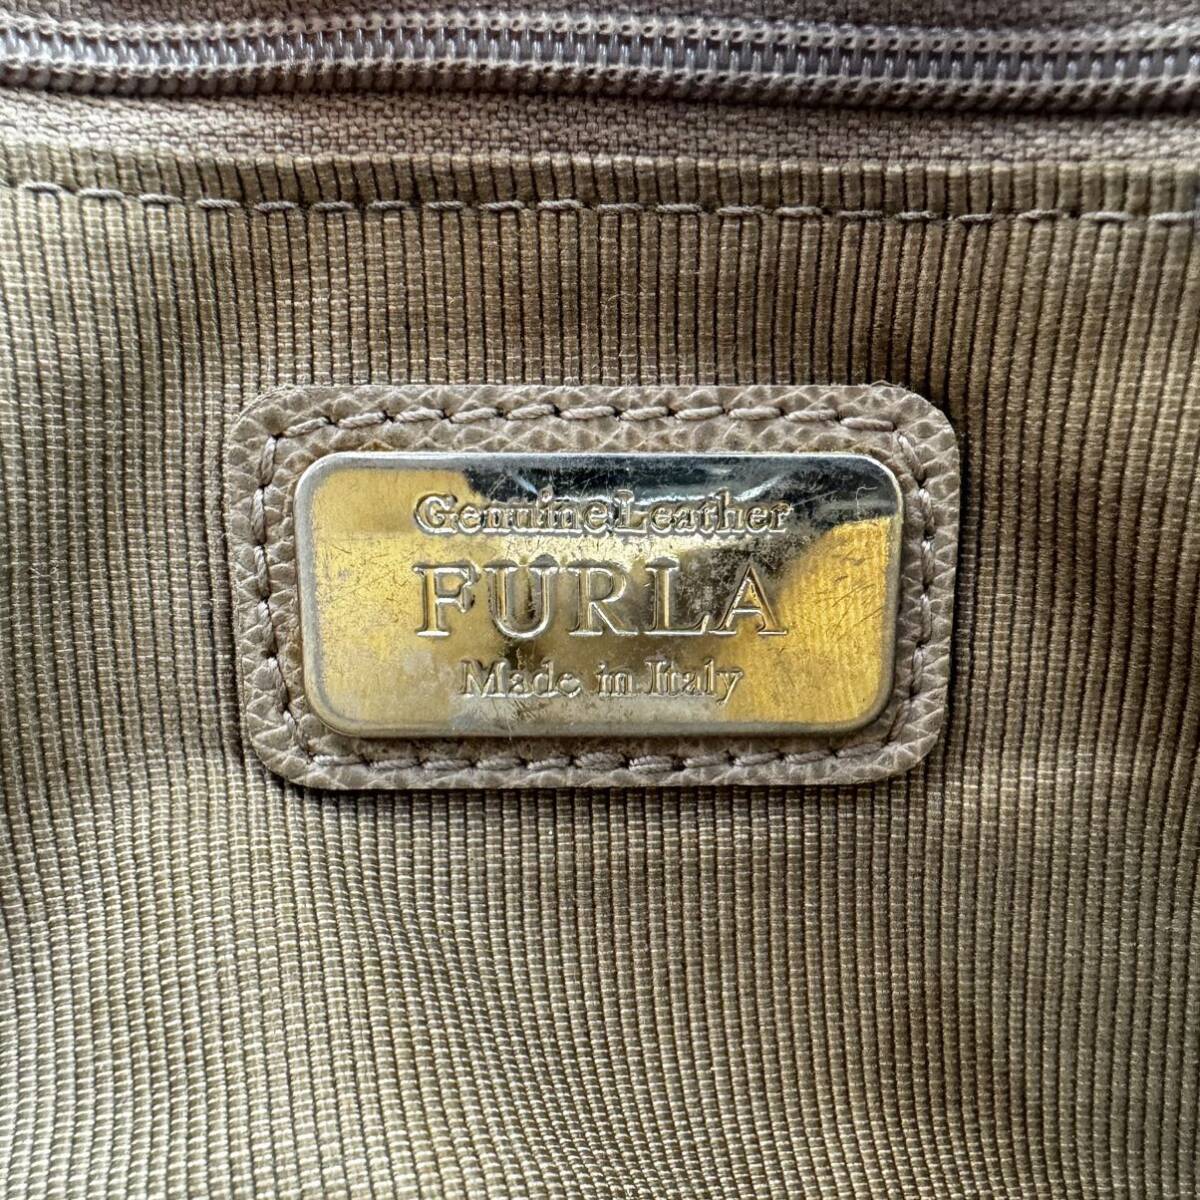 1 иен * 15 пункт суммировать FURULA Furla MICHAEL KORS Michael Kors Hunting World сумка на плечо большая сумка сумка прочее 